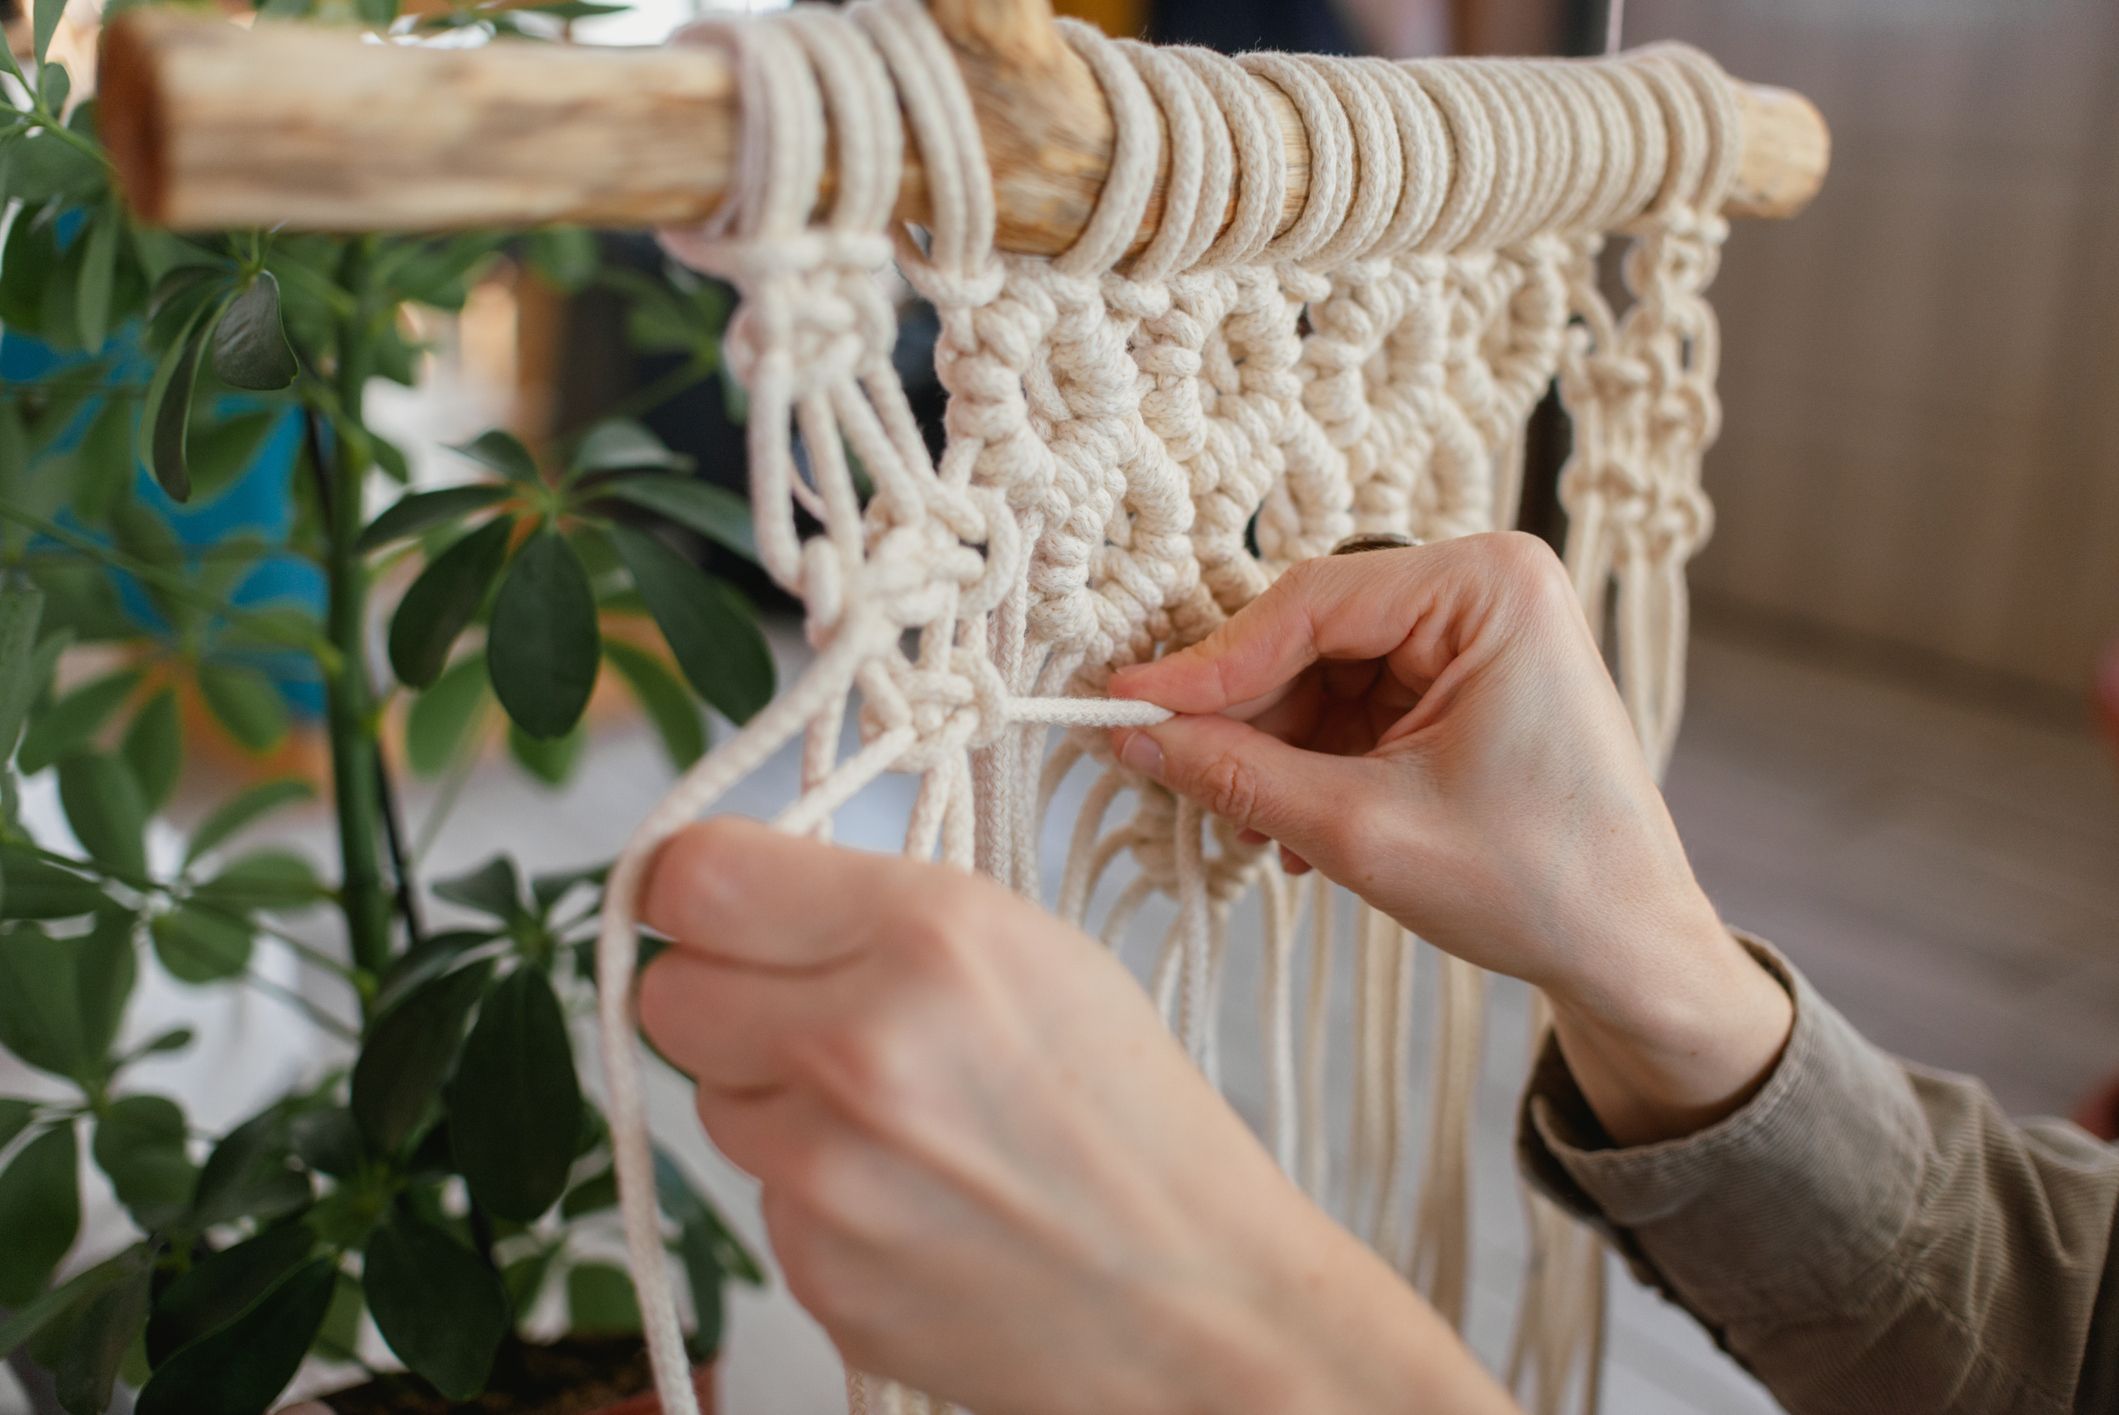 Macrame Plant Hanger Kit for Wall and Knotting DIY Macrame Kit for Beginner  